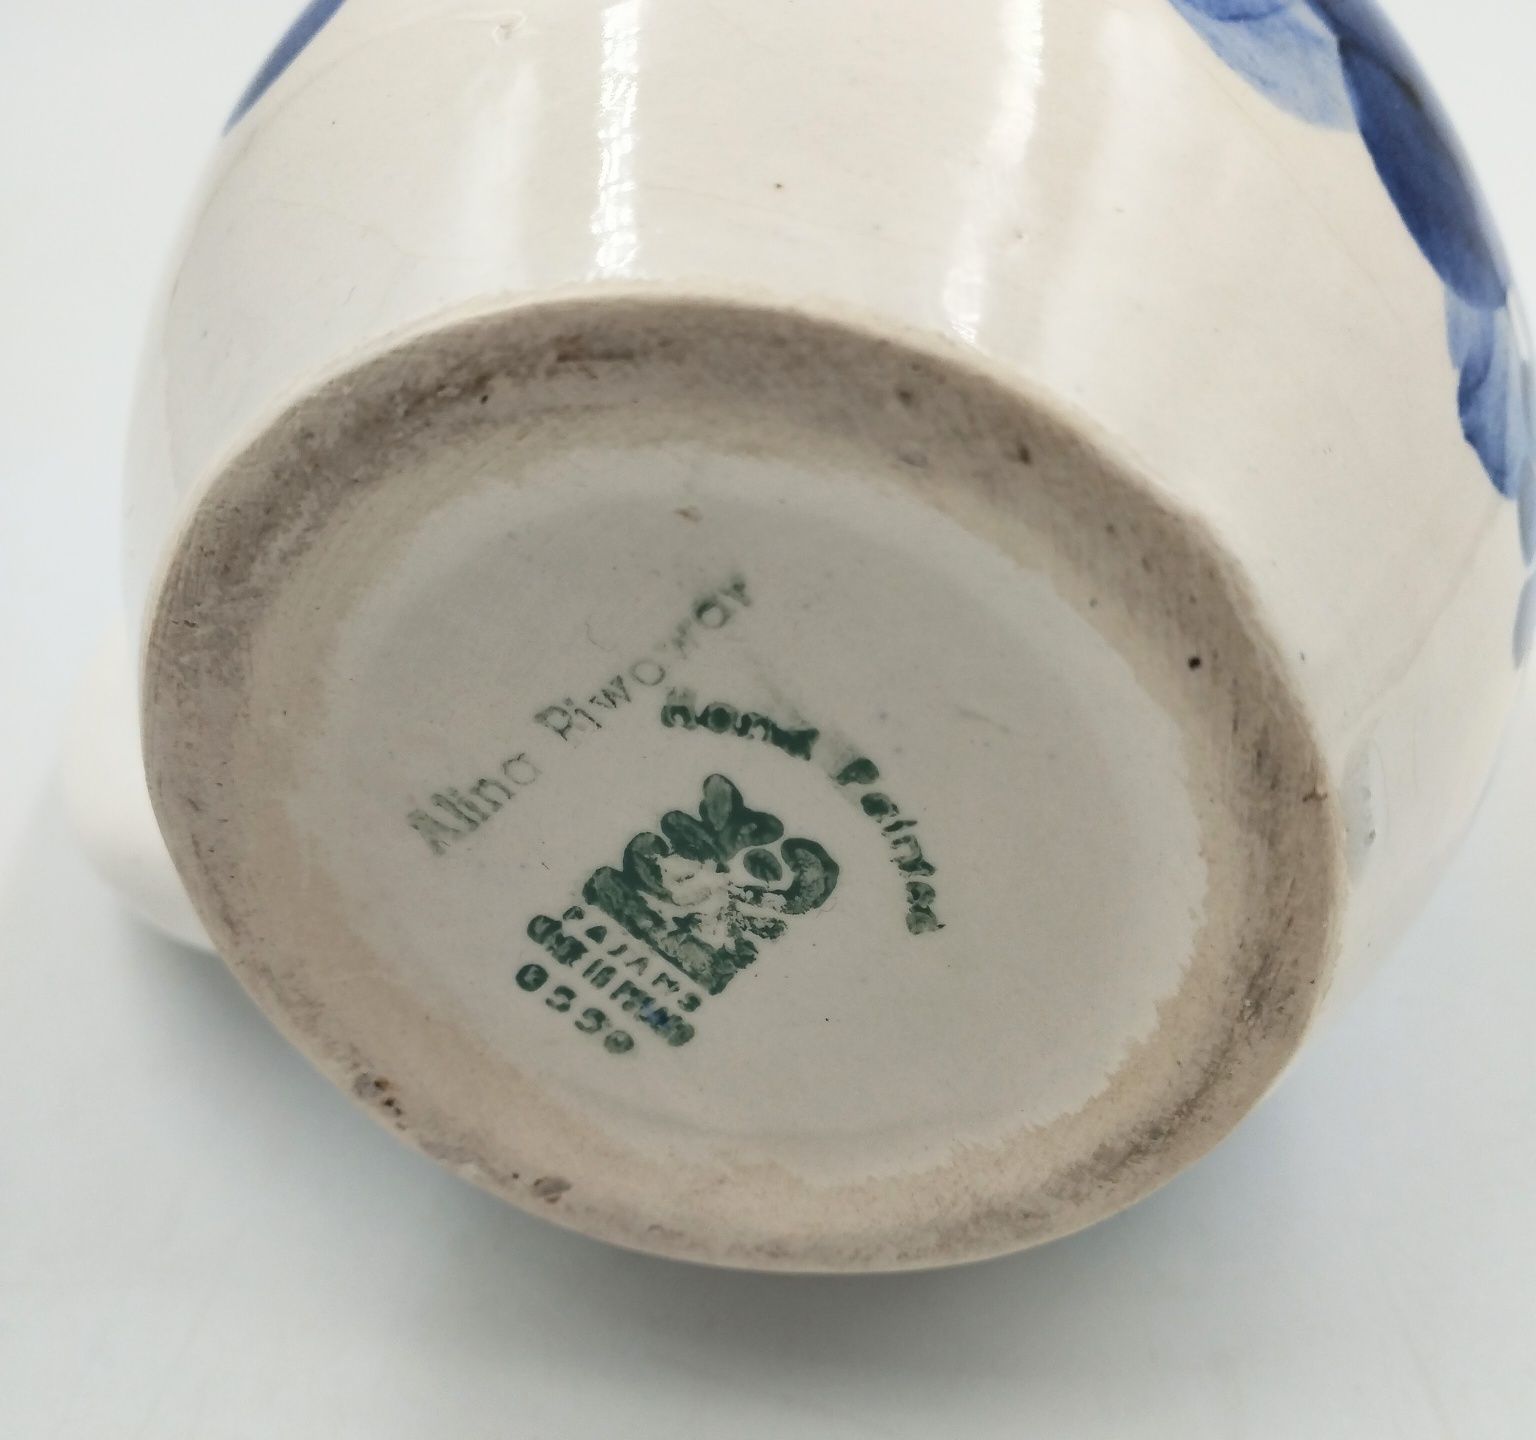 Kufel Włocławek kubek ceramiczny fajansowy kobalt antyk retro PRL folk